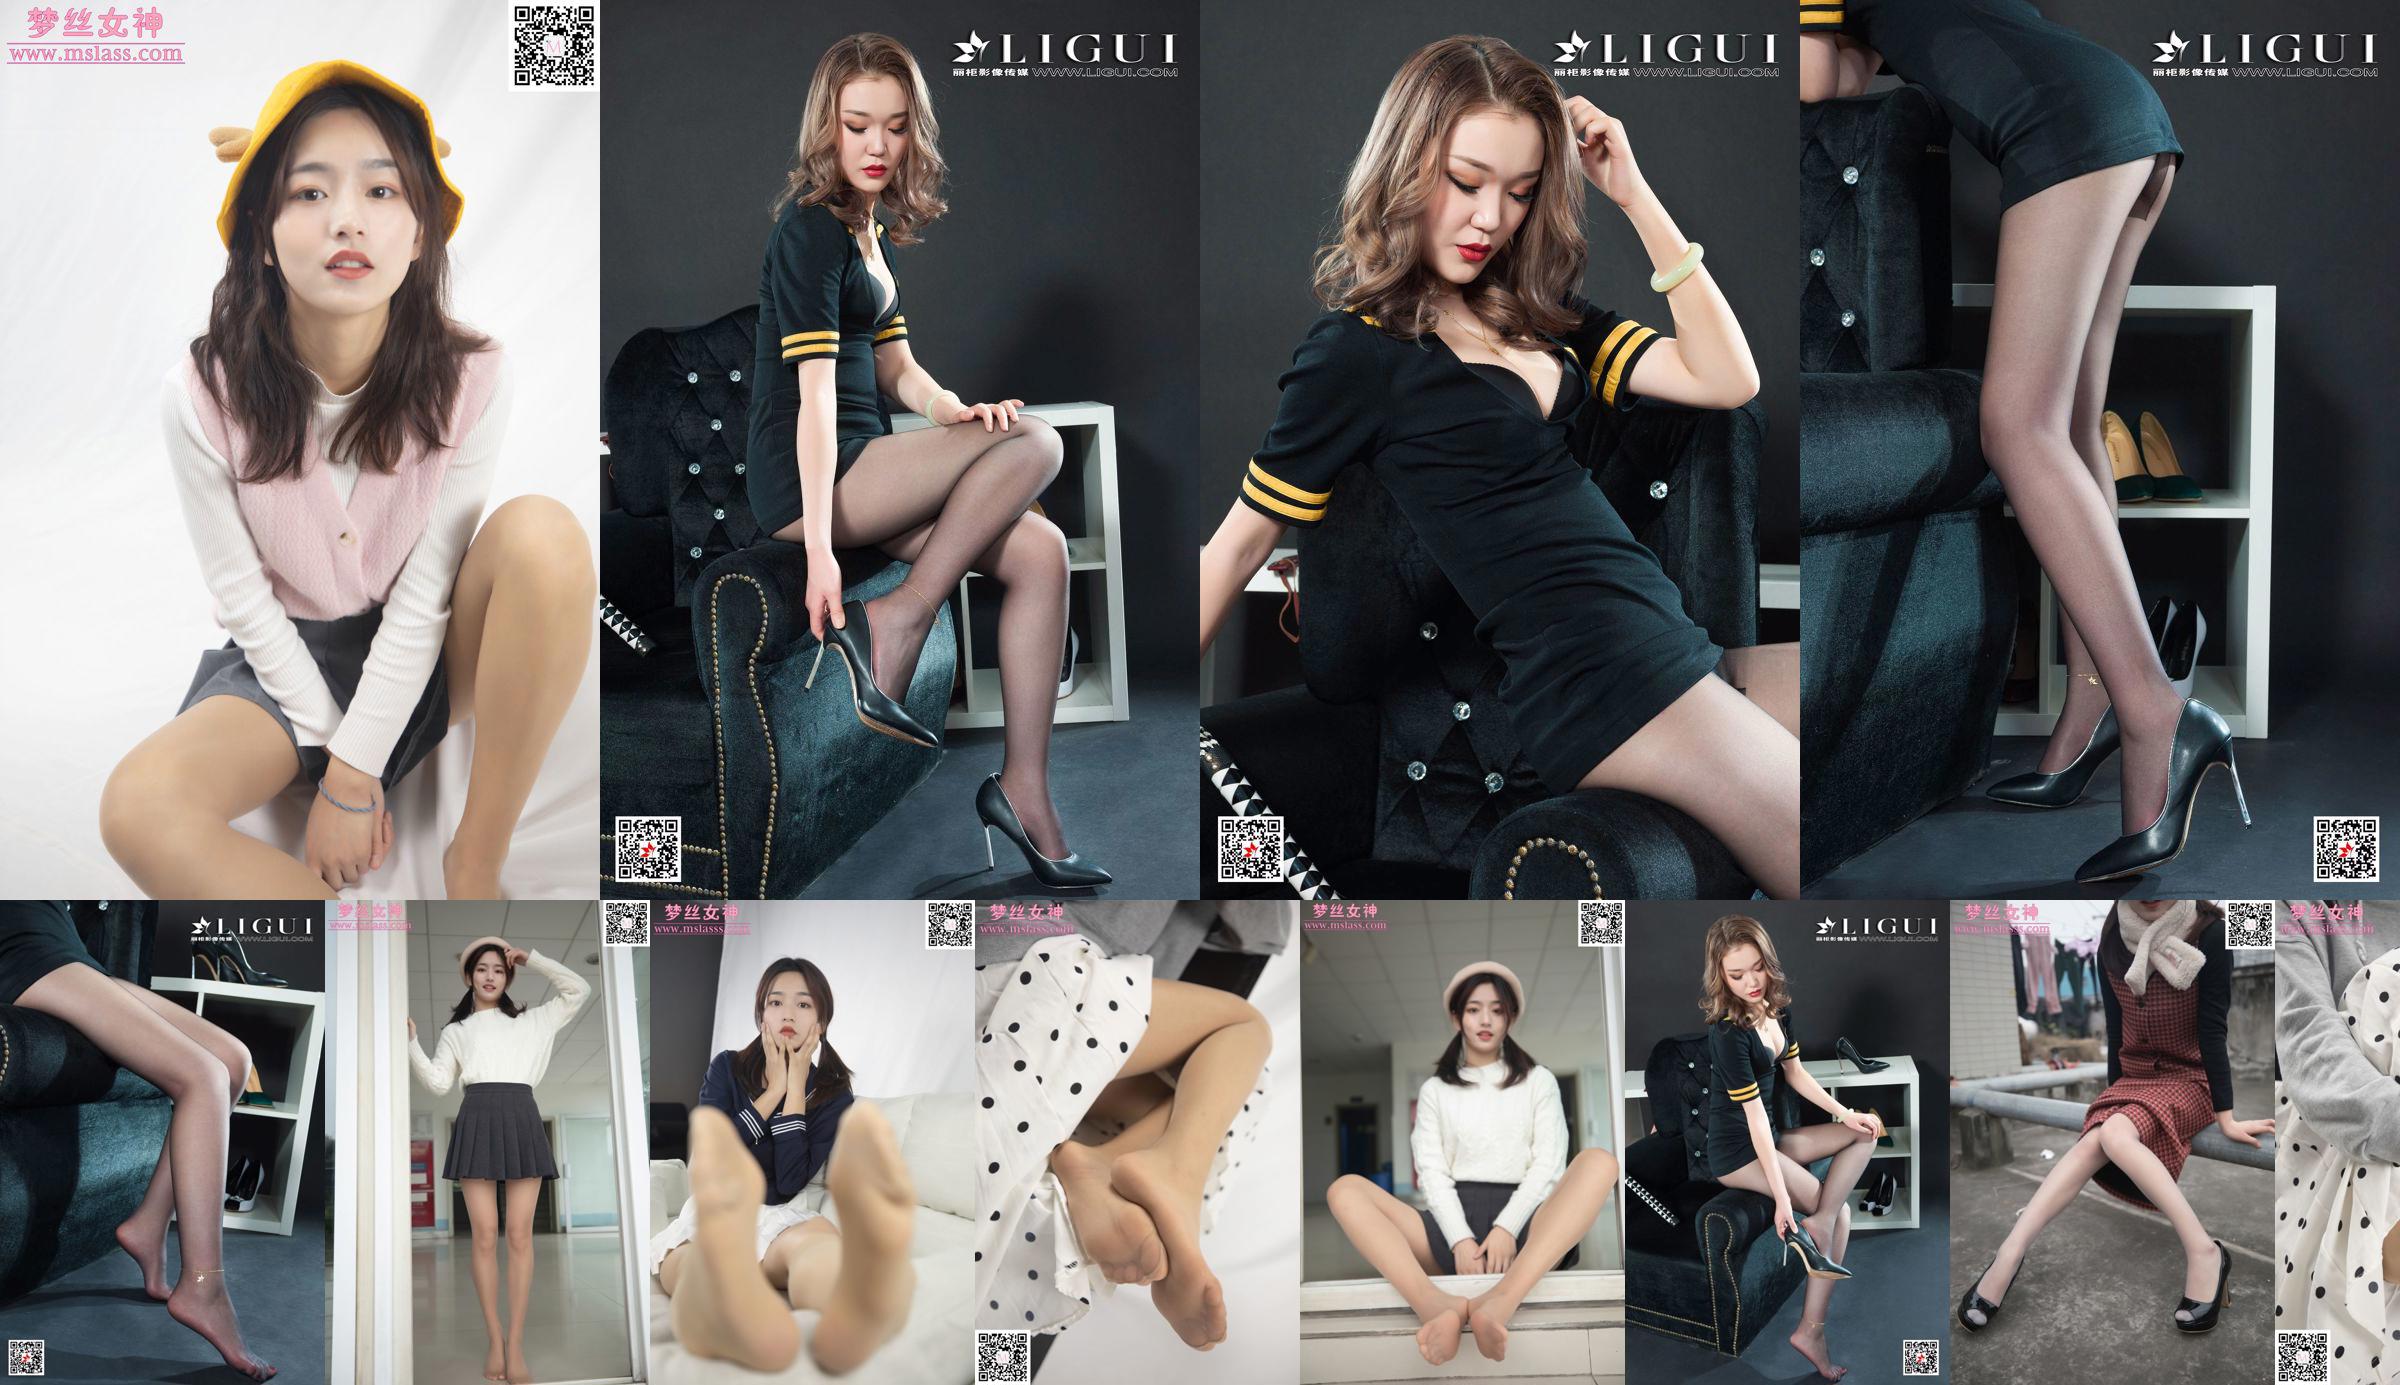 Xuanxuan Bein Modell "Black Silk Stewardess Uniform" [Ligui Ligui] Internet Beauty No.112c6d Seite 1